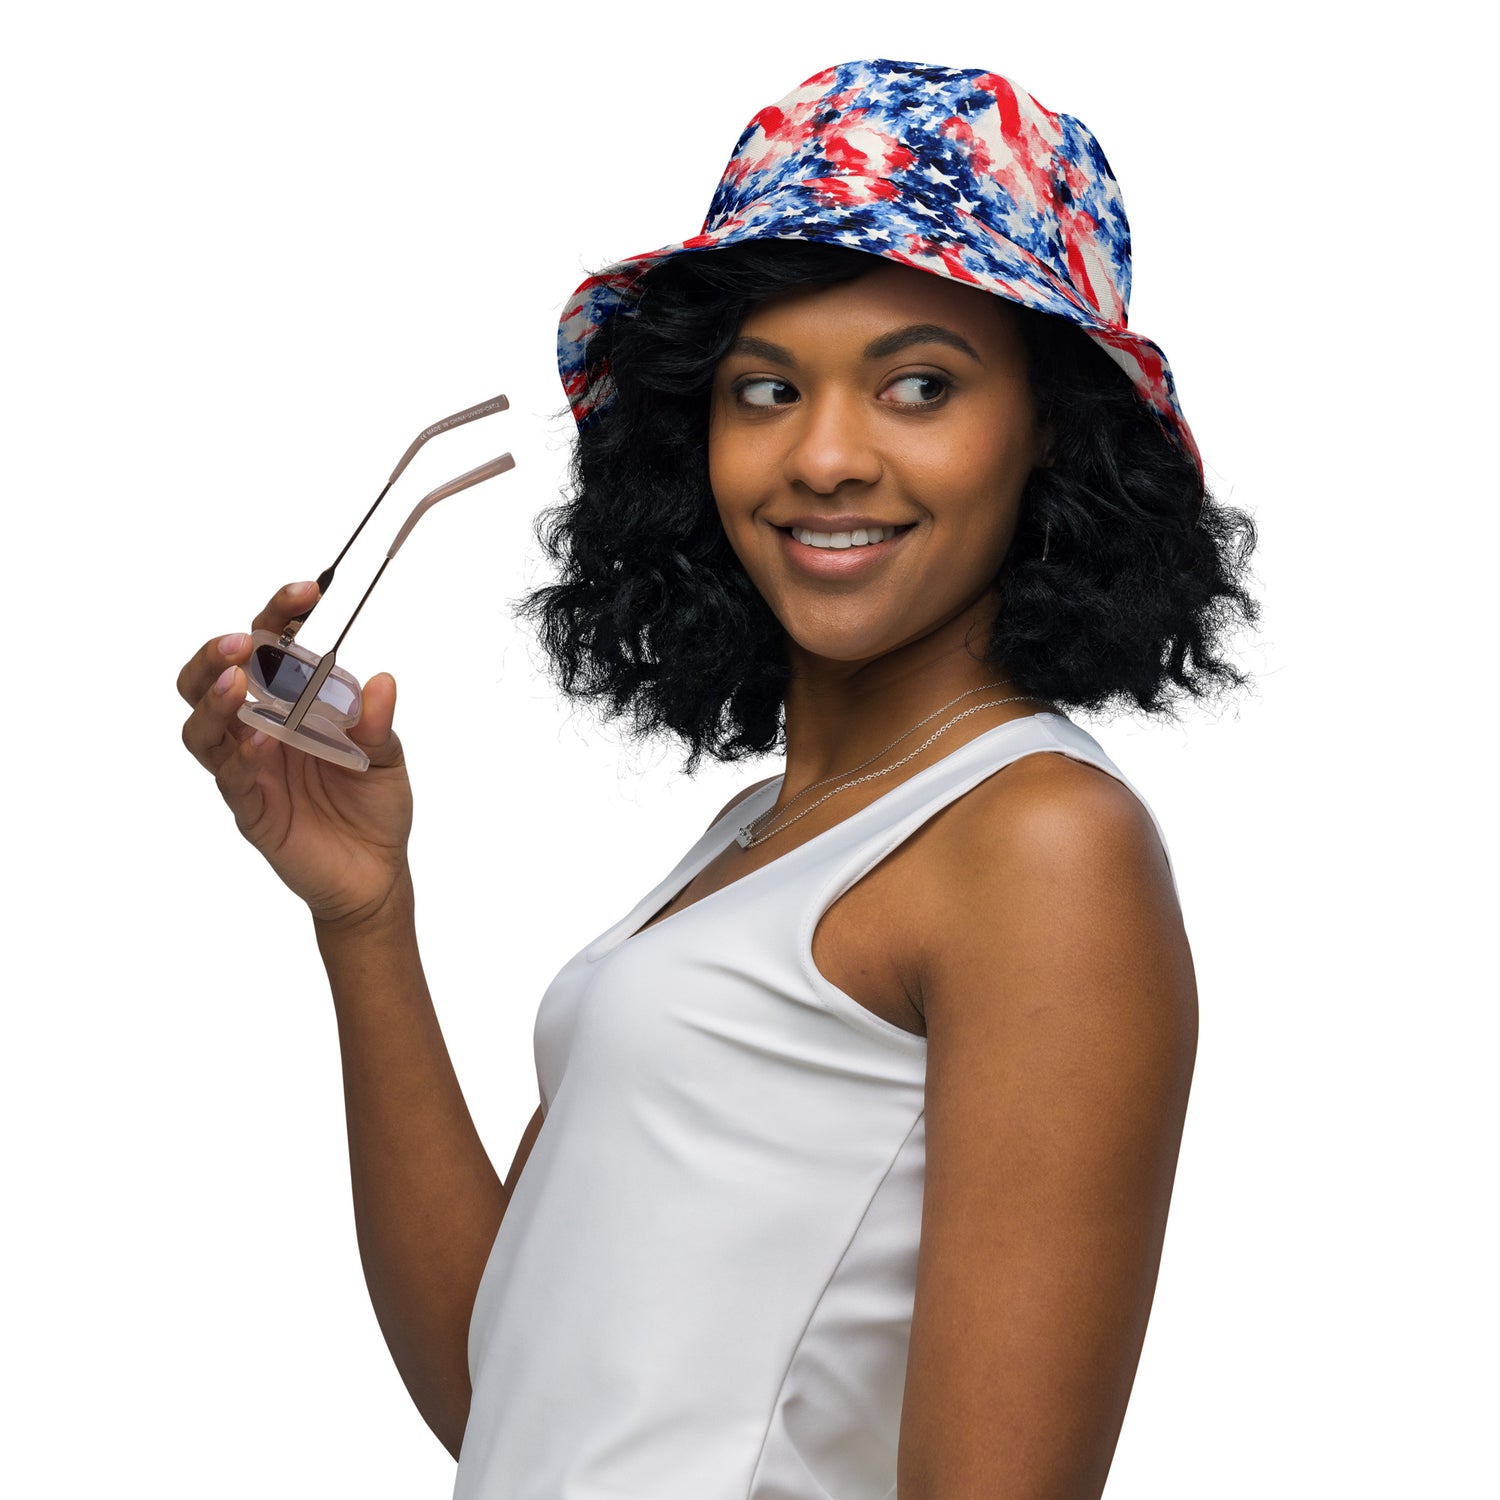 American Flag Reversible Bucket Hat